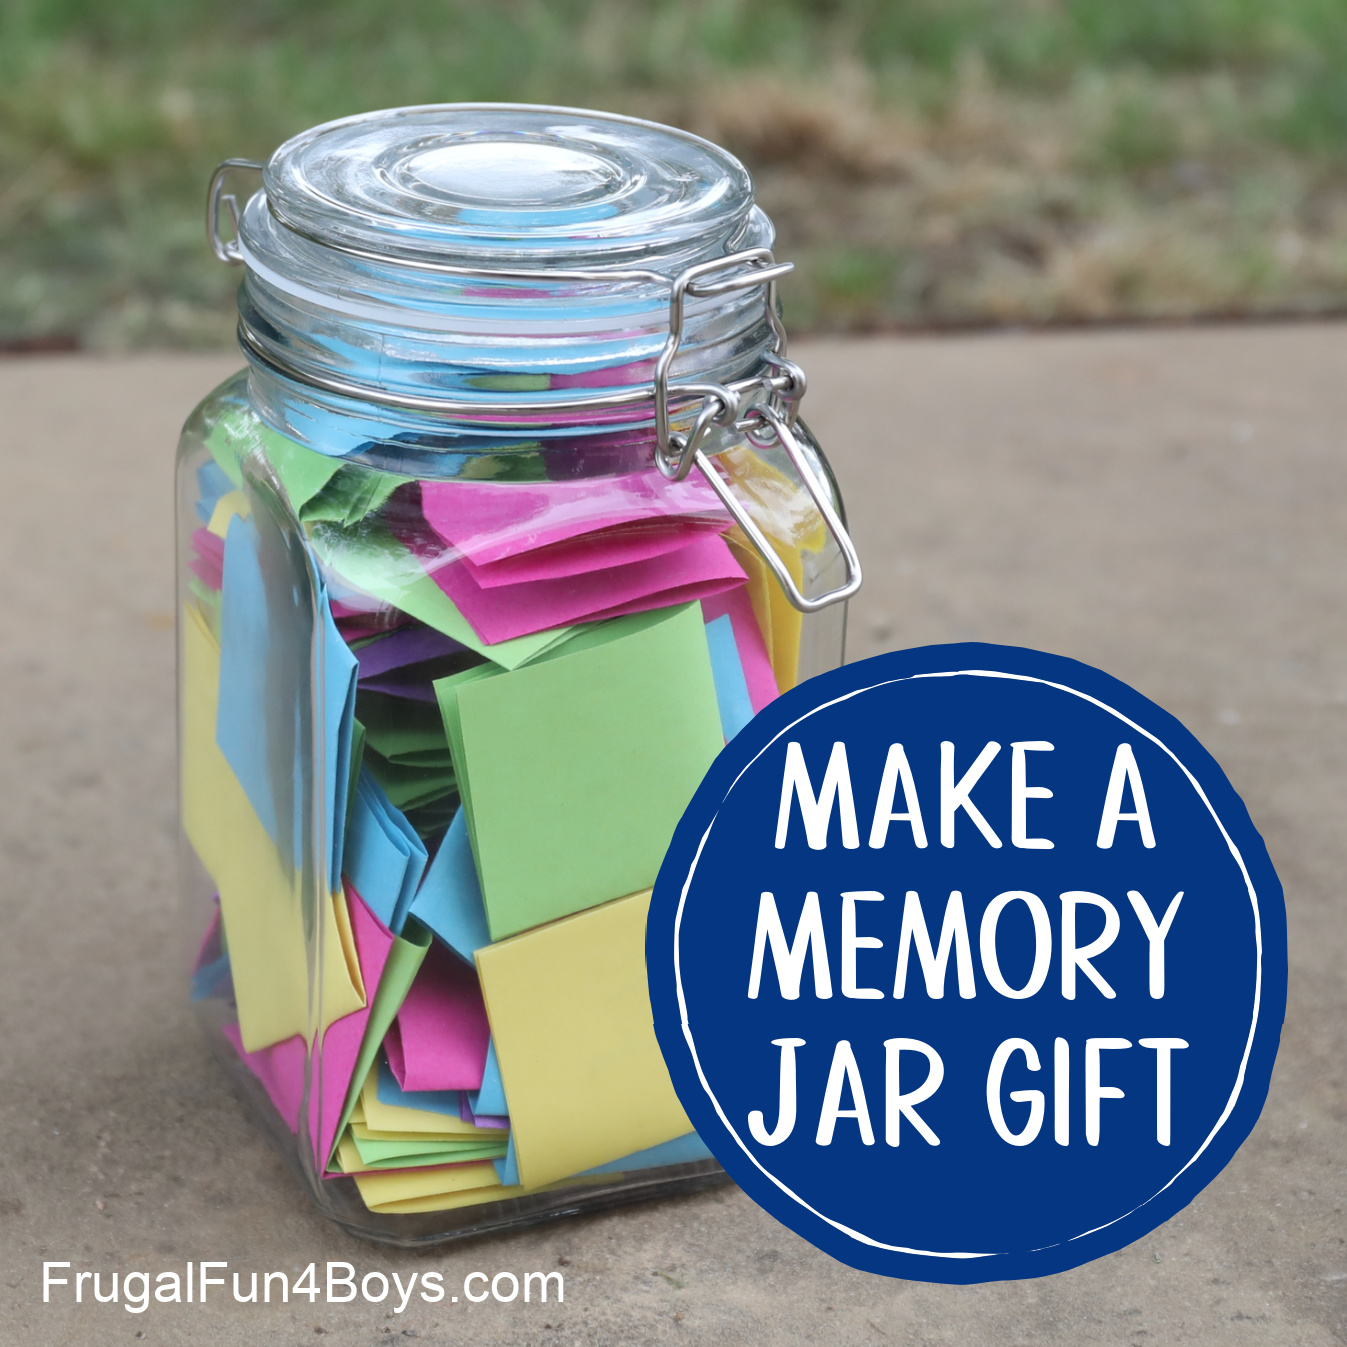 Memory jar gift idea - Fill a jar with hand written memories!